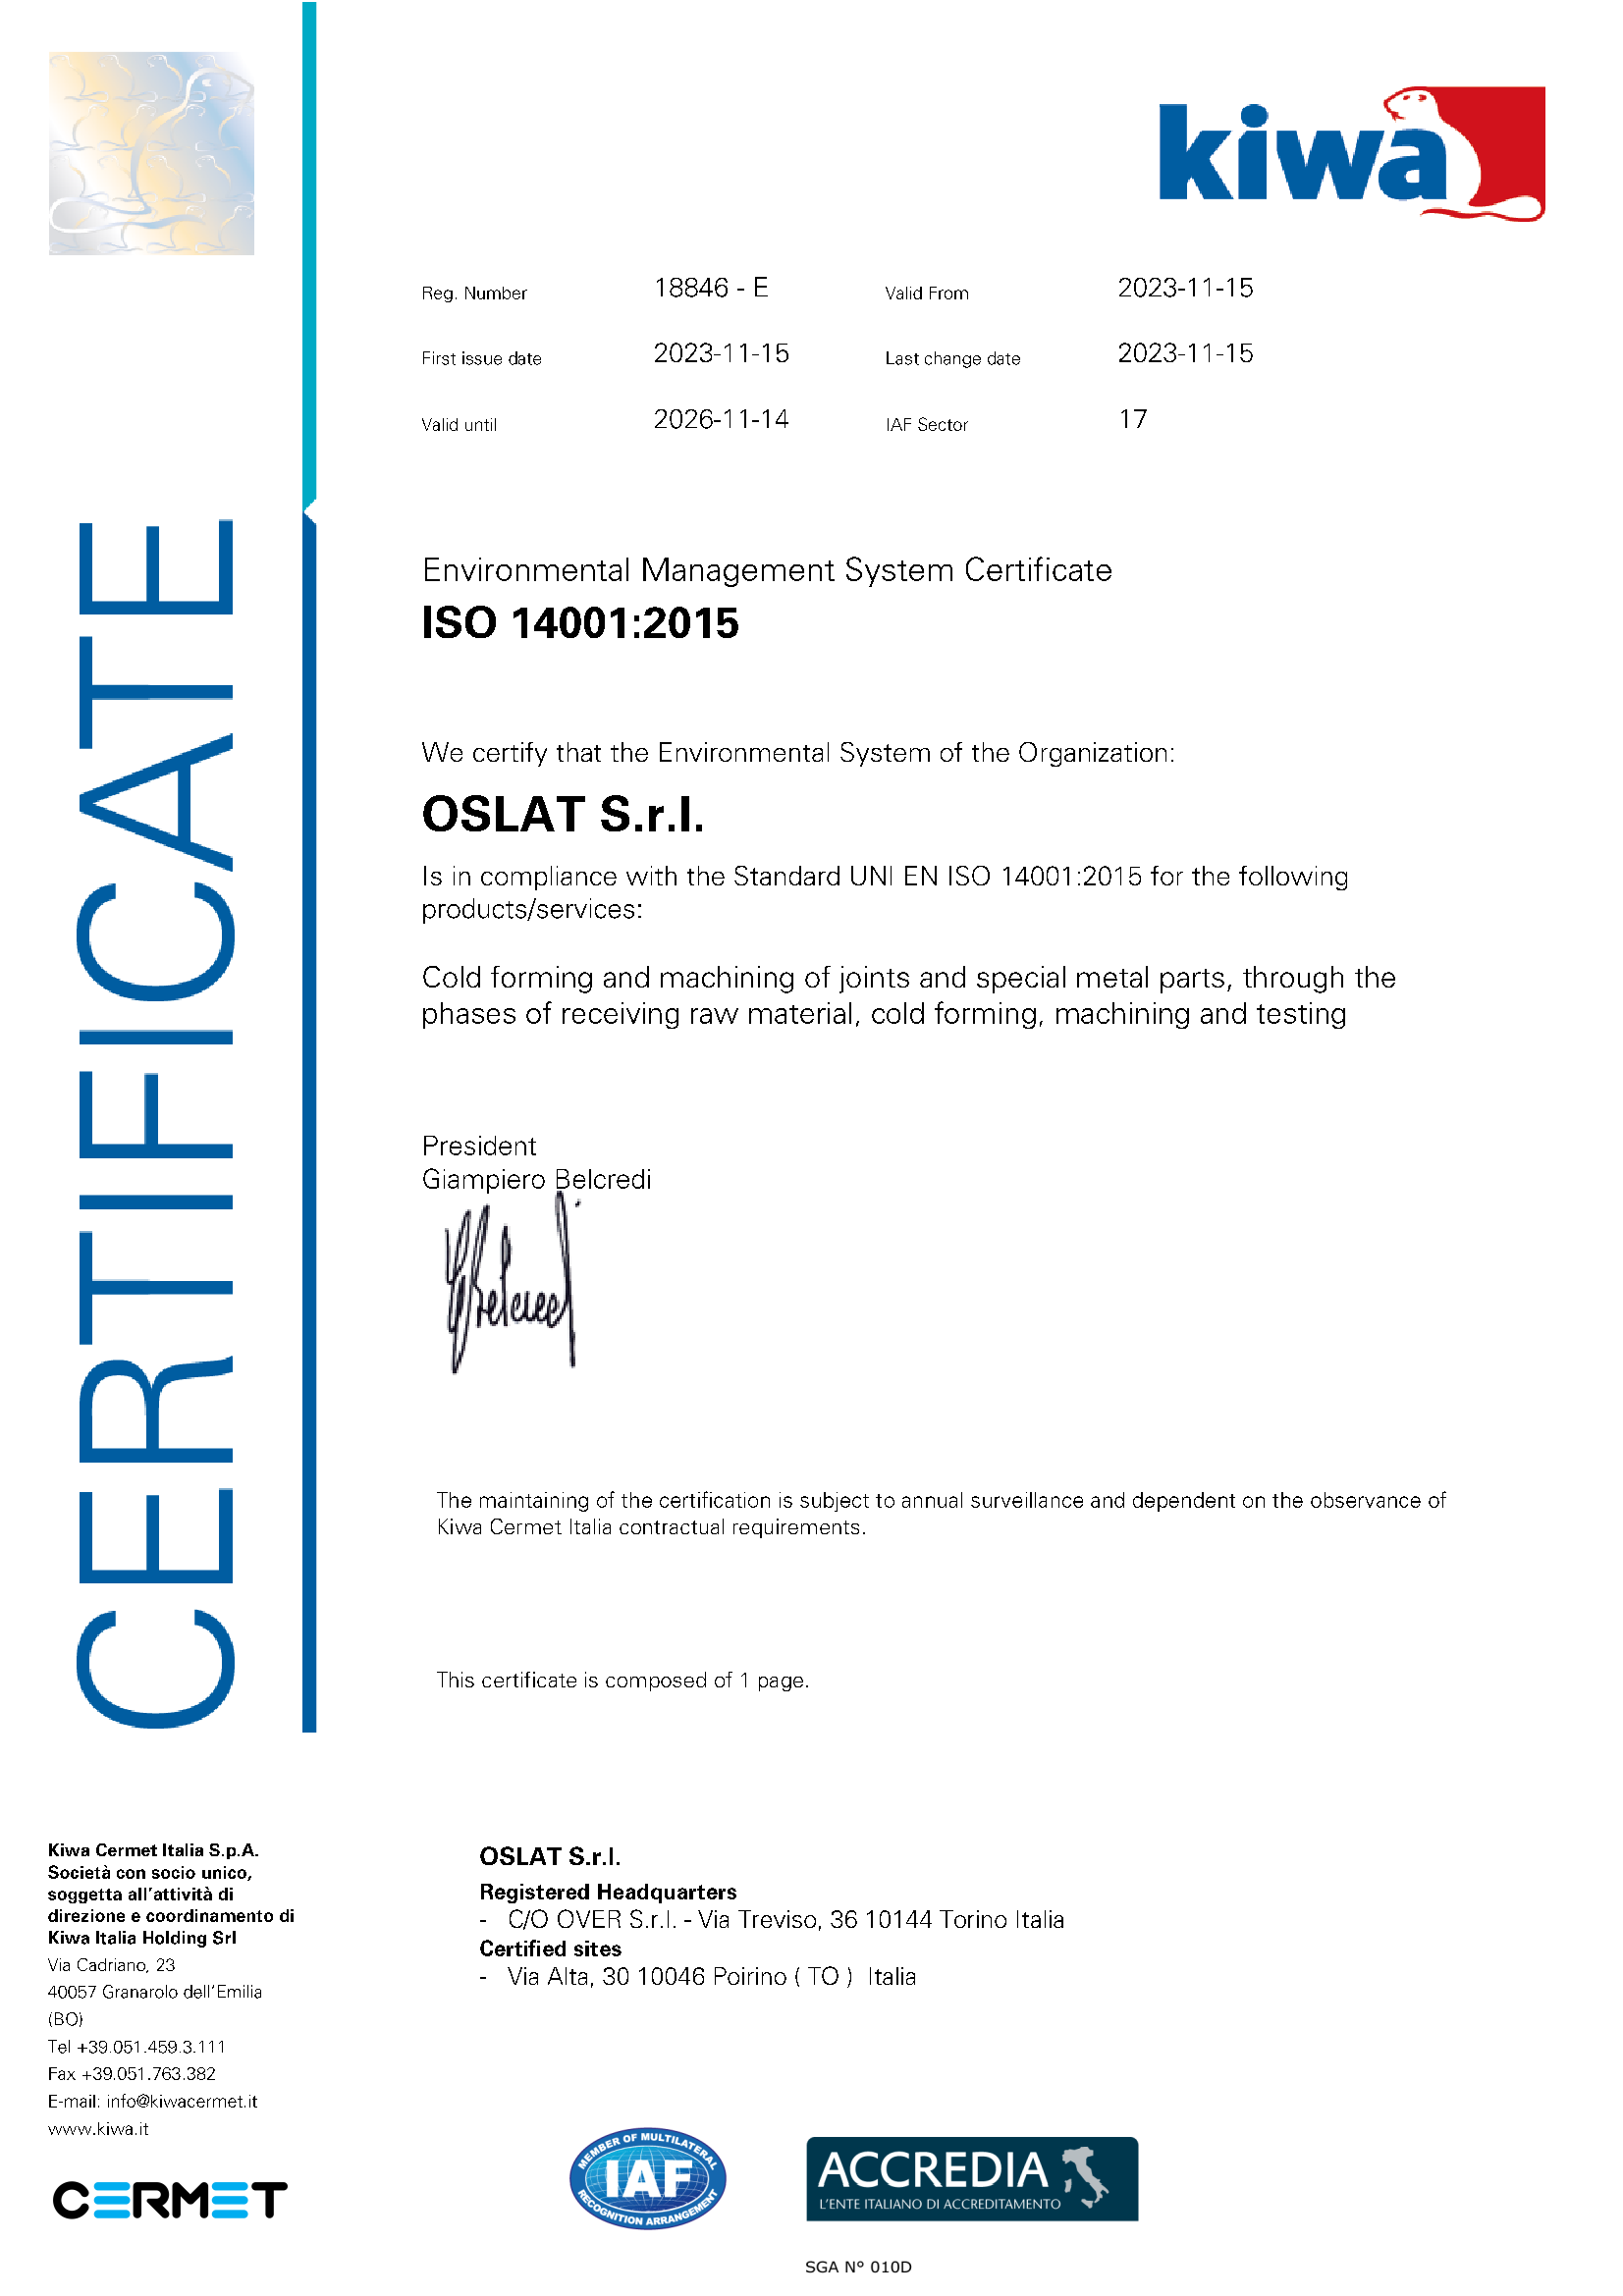 CERT ISO 14001 18846 ENG 2023 11 15  1  - CERTIFICATION & TESTING